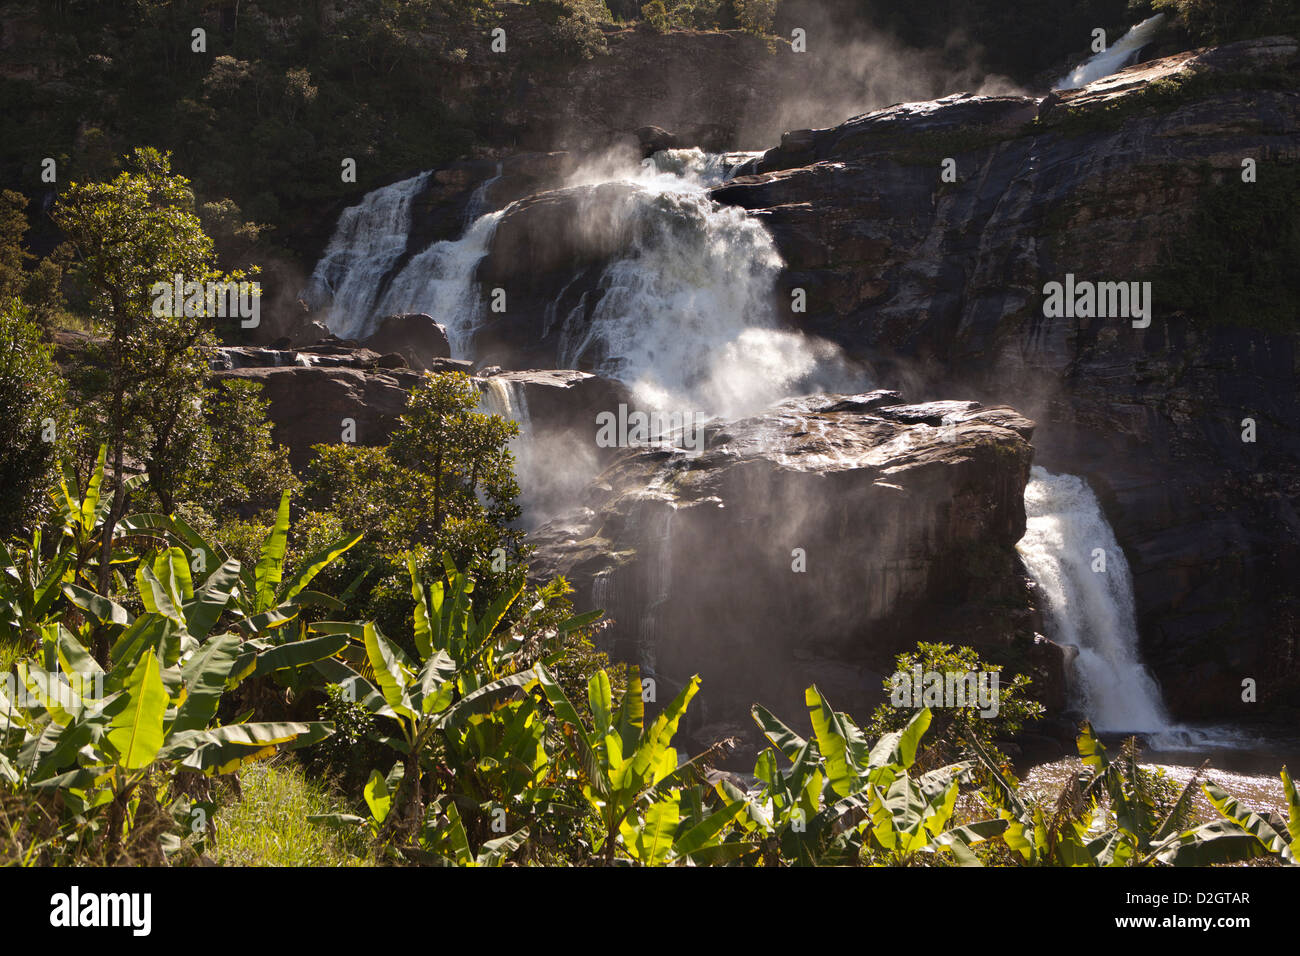 Madagascar, Ranomafana National Park, Namorona River waterfall Stock Photo